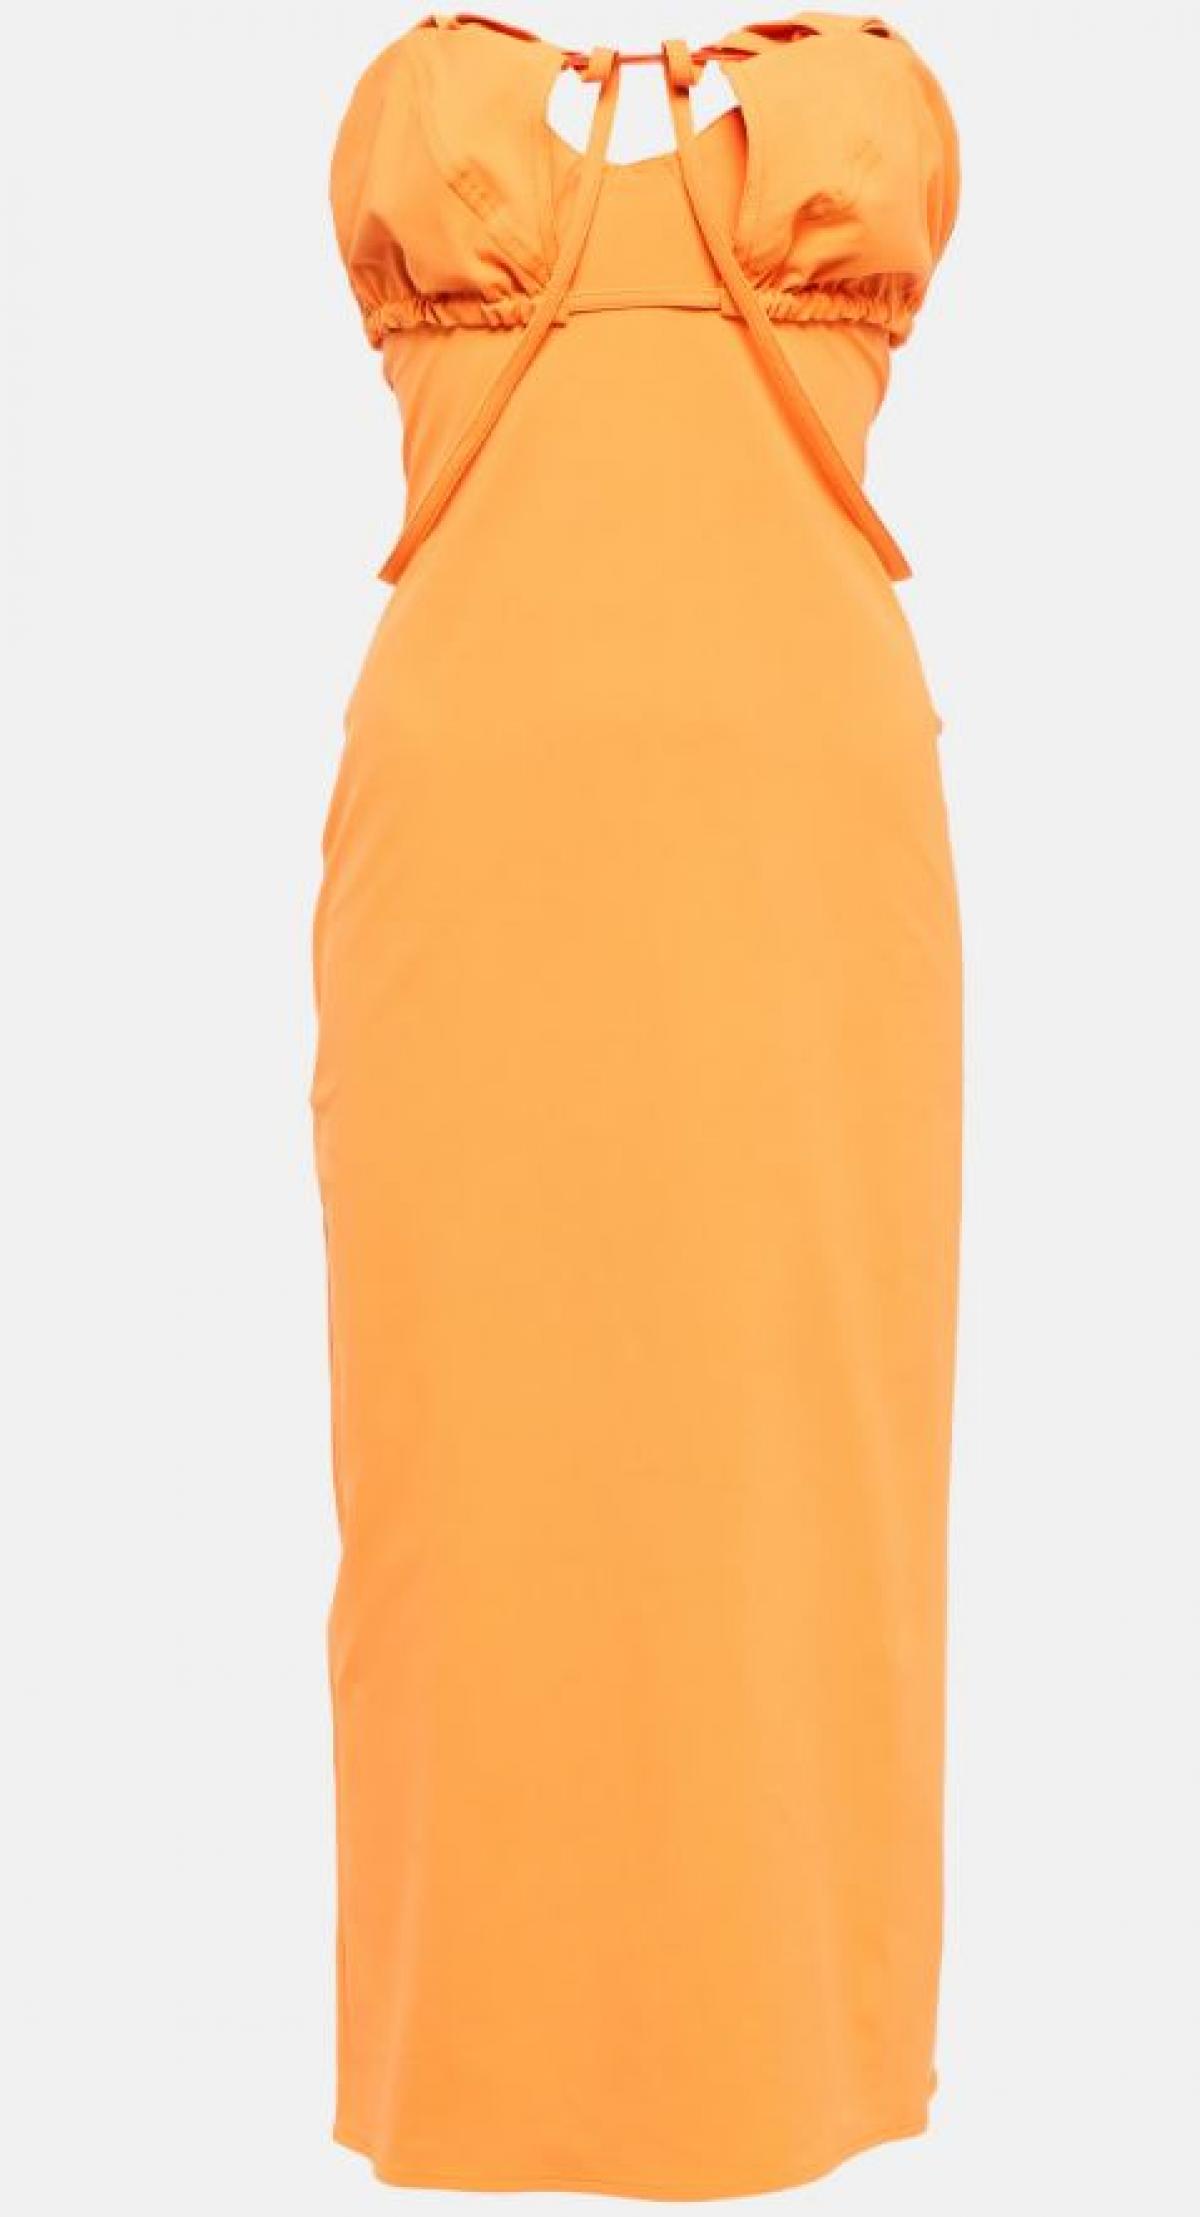 Mouwloze bustier-jurk in zomers oranje